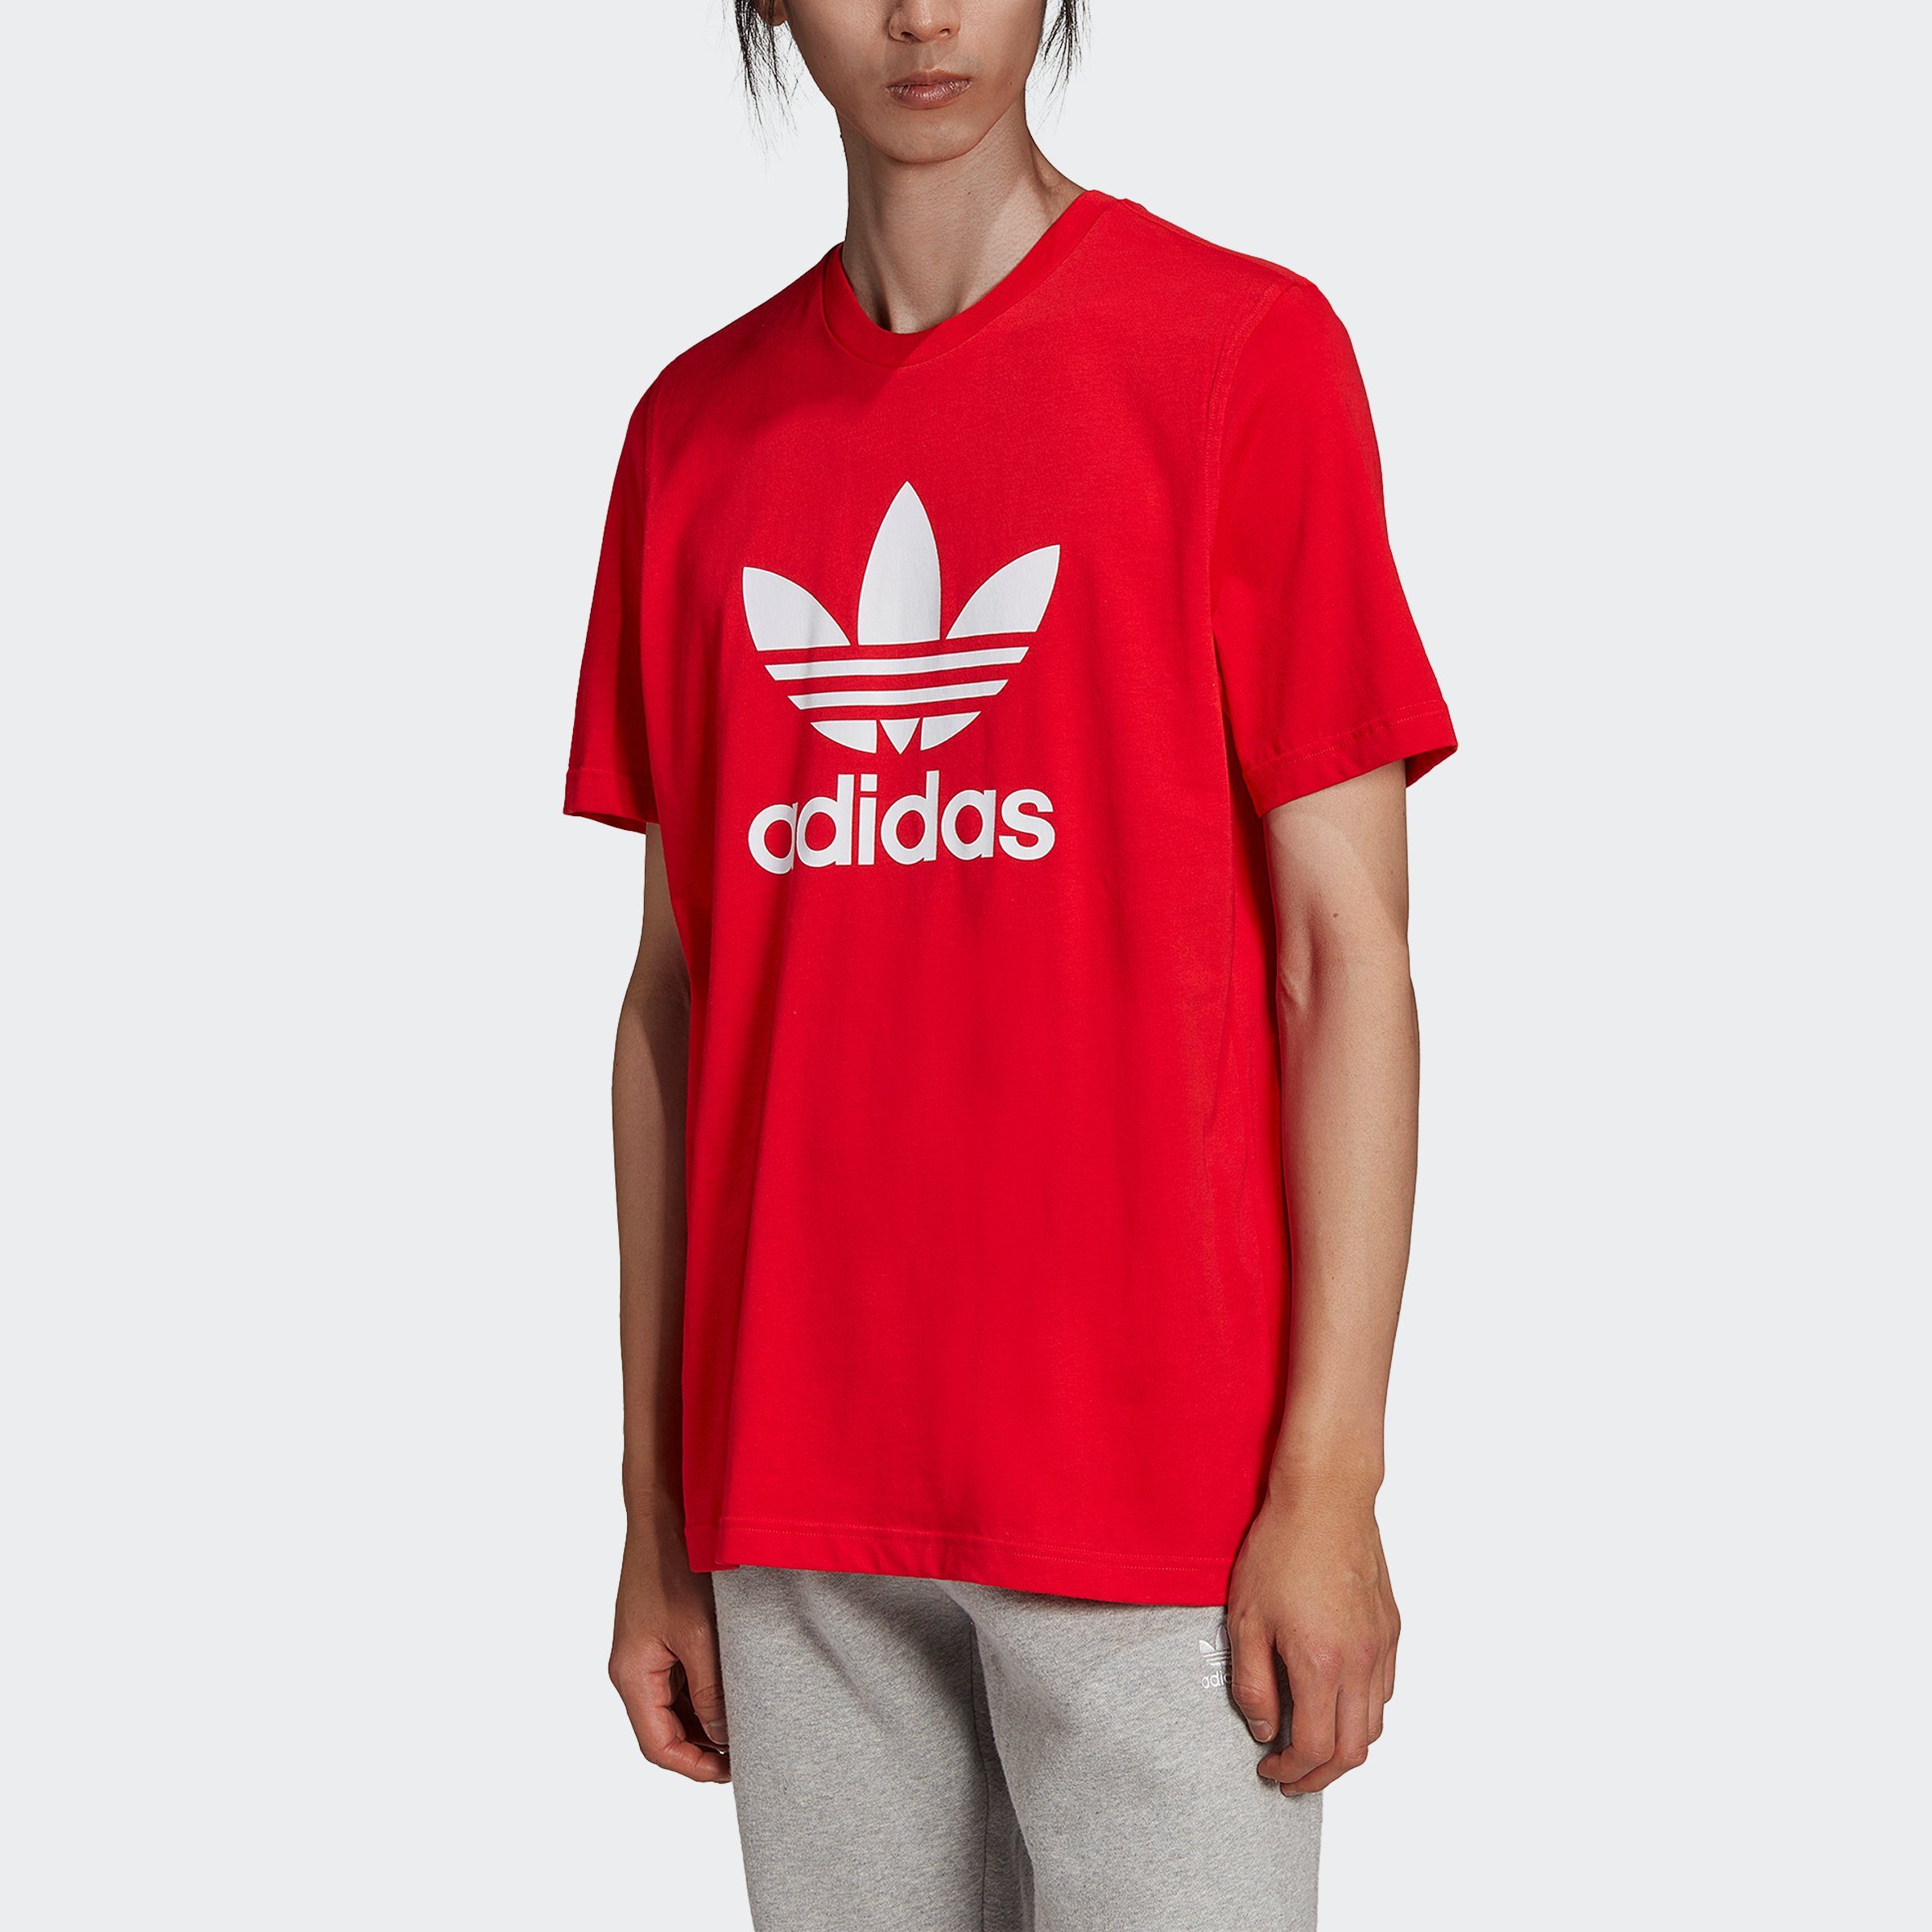 adidas Originals T-Shirt ADICOLOR CLASSICS TREFOIL VIVRED/WHITE